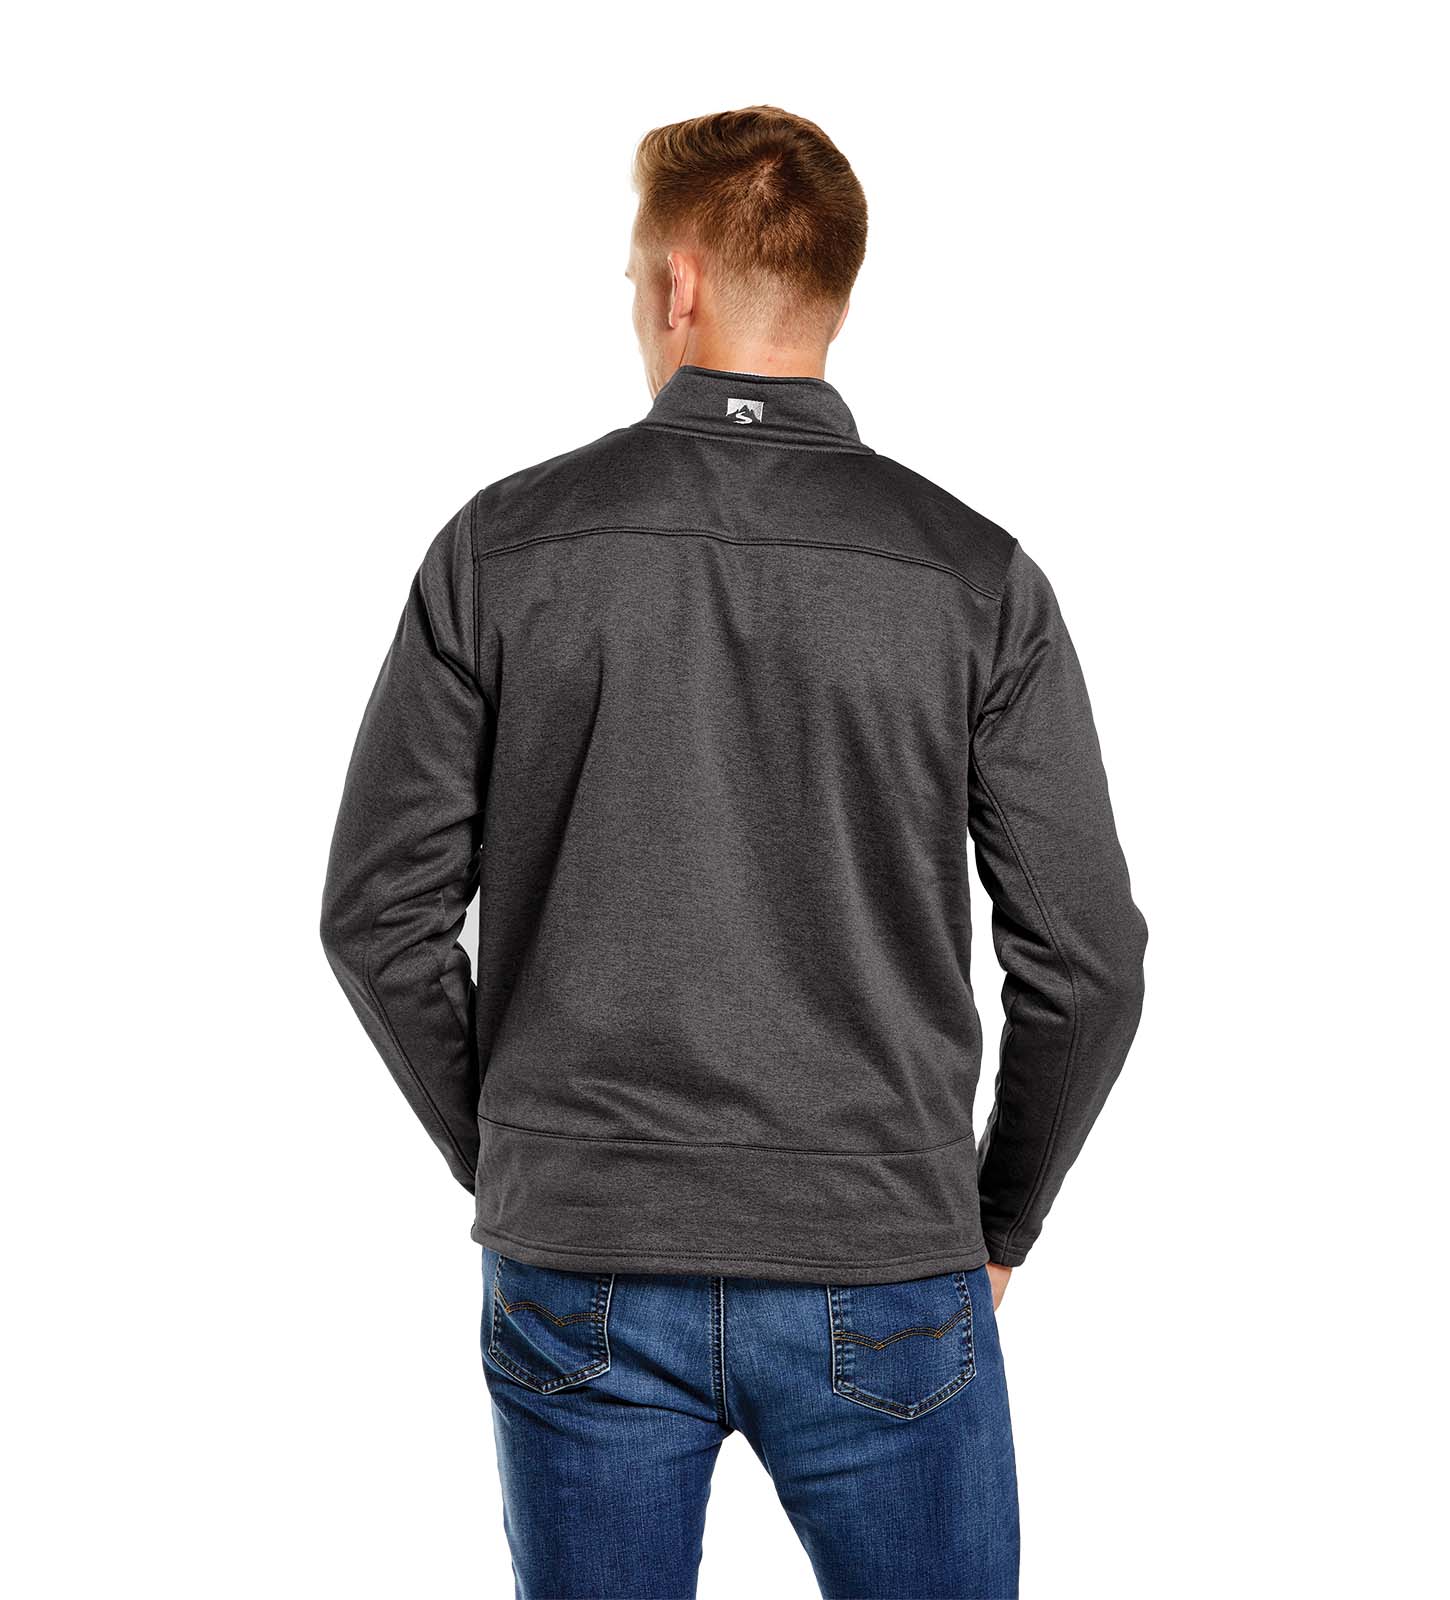 Men's Stabilizer Performance Fleece Jacket